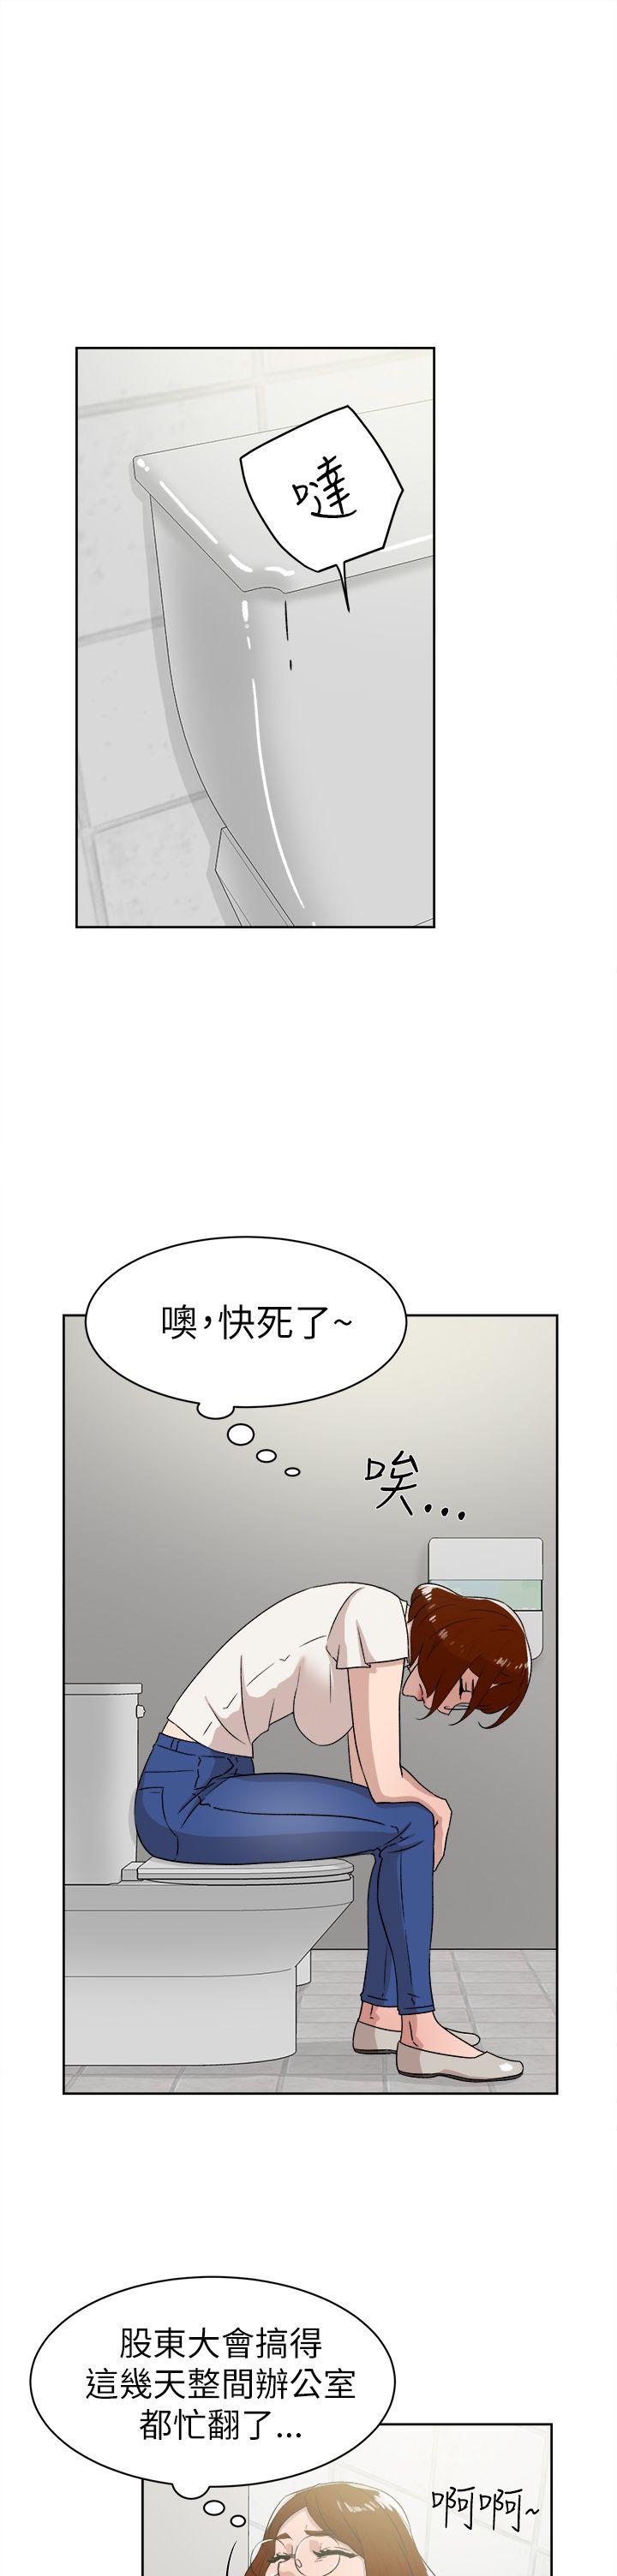 韩国污漫画 她的高跟鞋(無刪減) 第41话 13